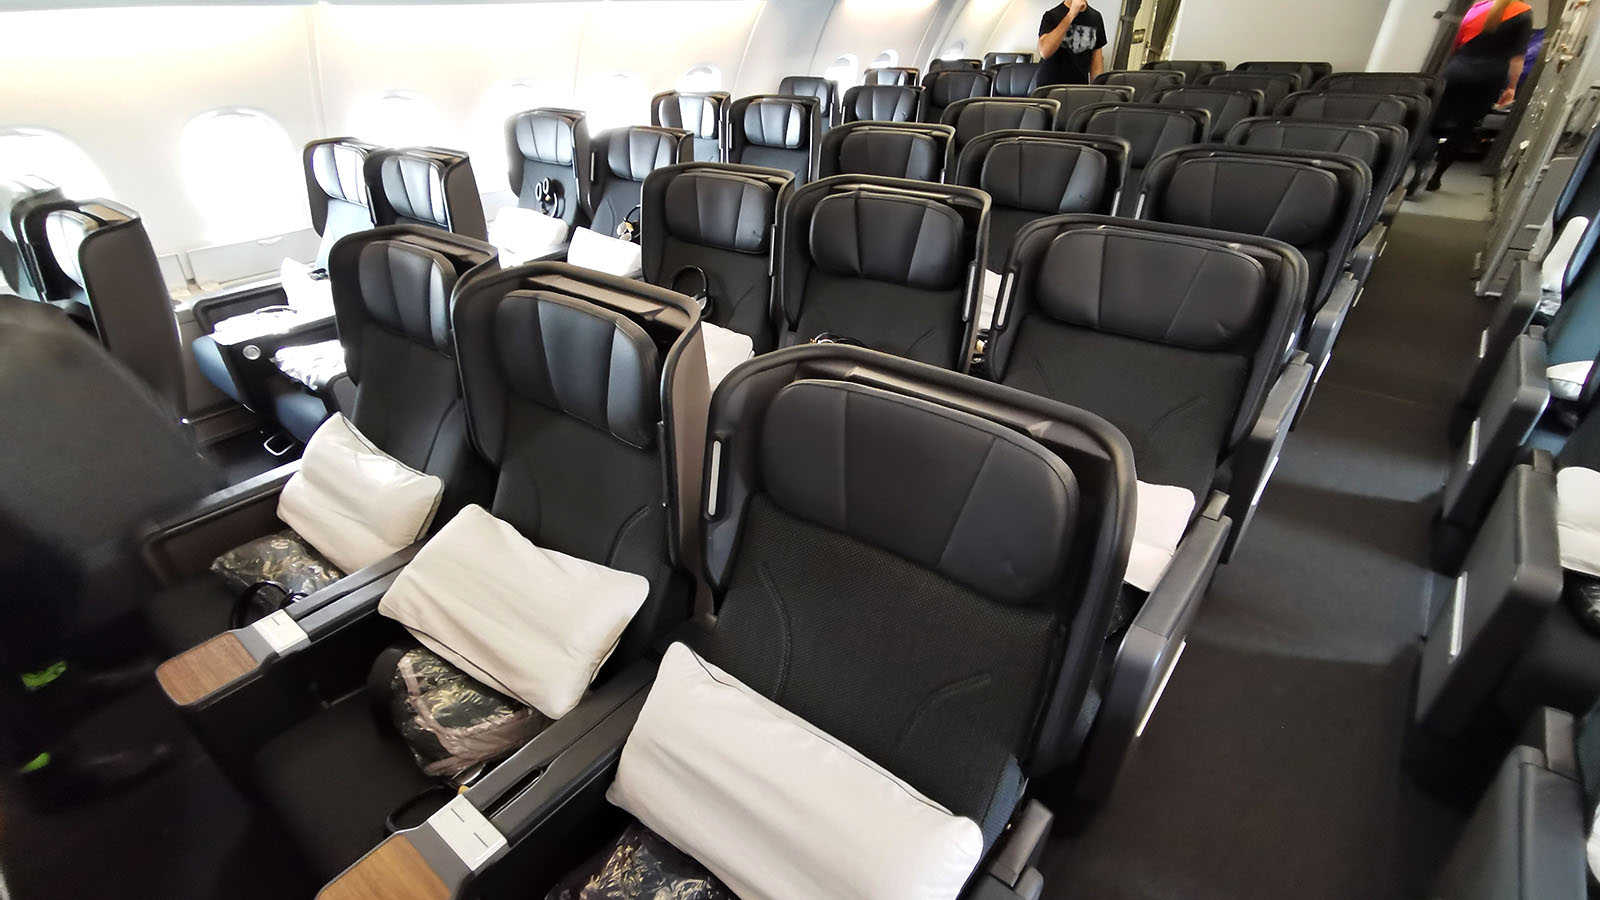 Seating in Qantas A380 Premium Economy